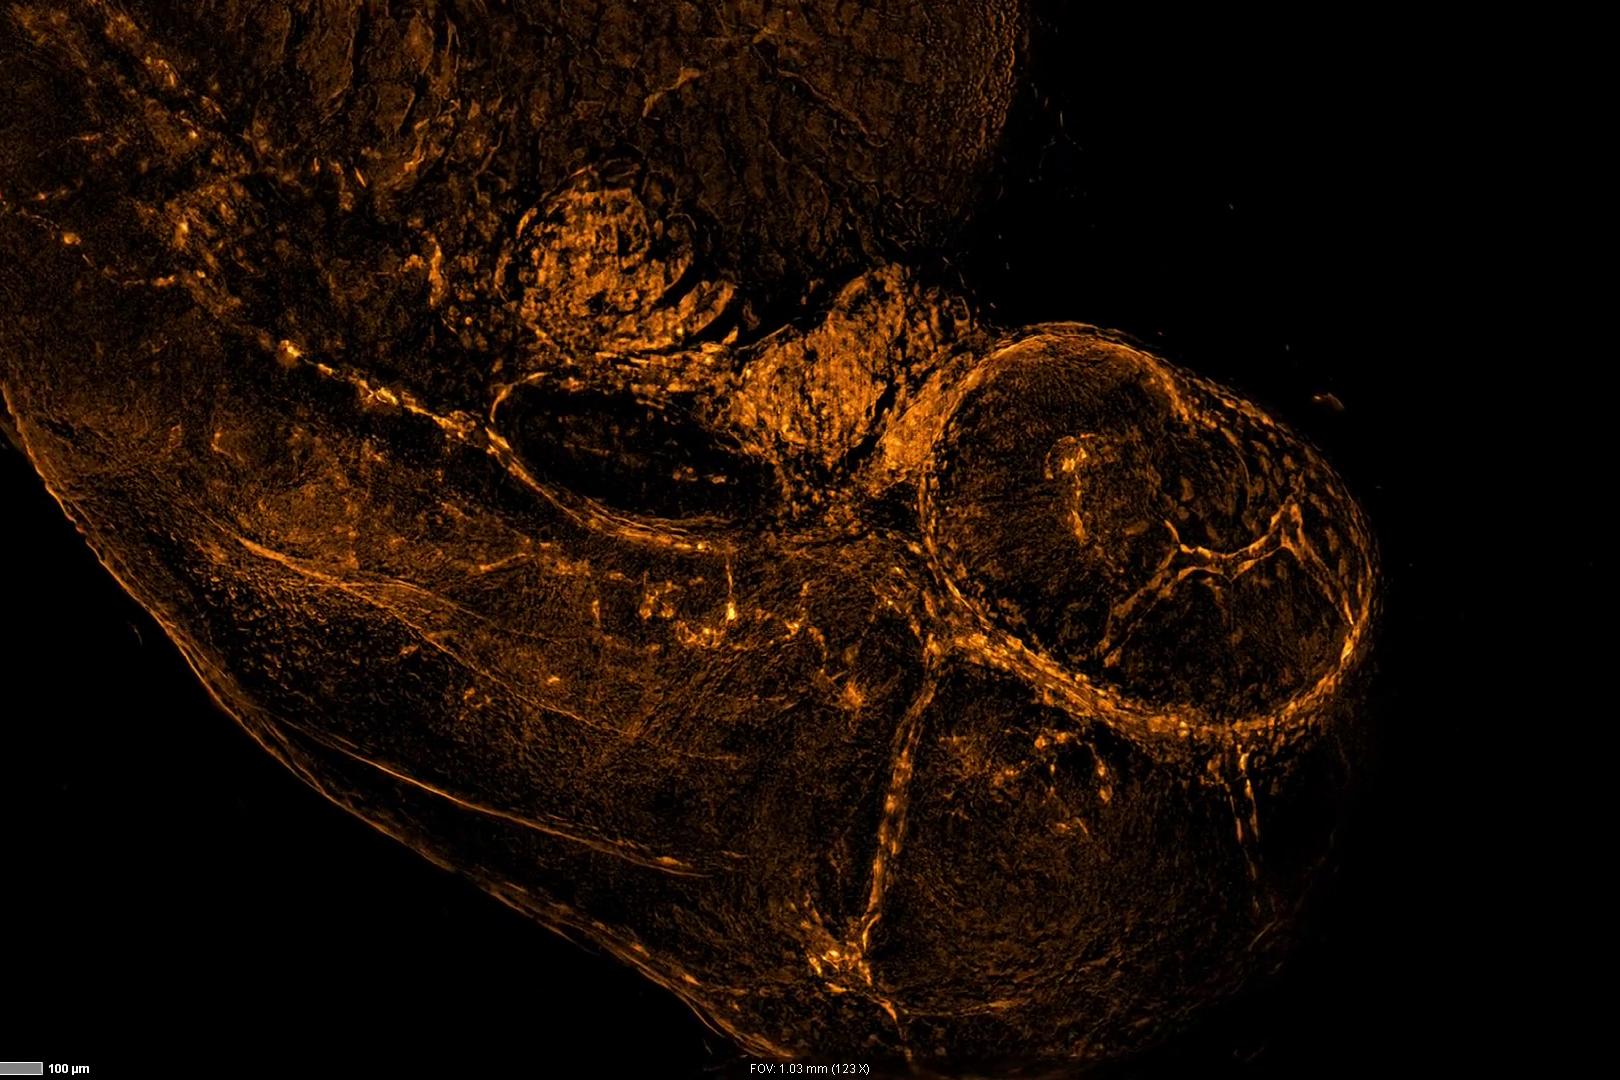 Image d'embryon de poisson zèbre exprimant un marqueur vasculaire fli1-EGFP capturée en 3D. La figure montre la projection d'intensité maximale de l'ensemble des données de la pile Z du balayage mosaïque. Objectif : Plan-Neofluar 10× / 0.3. Échantillon fourni avec l'aimable autorisation de Haass Lab (MCN, Université de Munich, Allemagne)